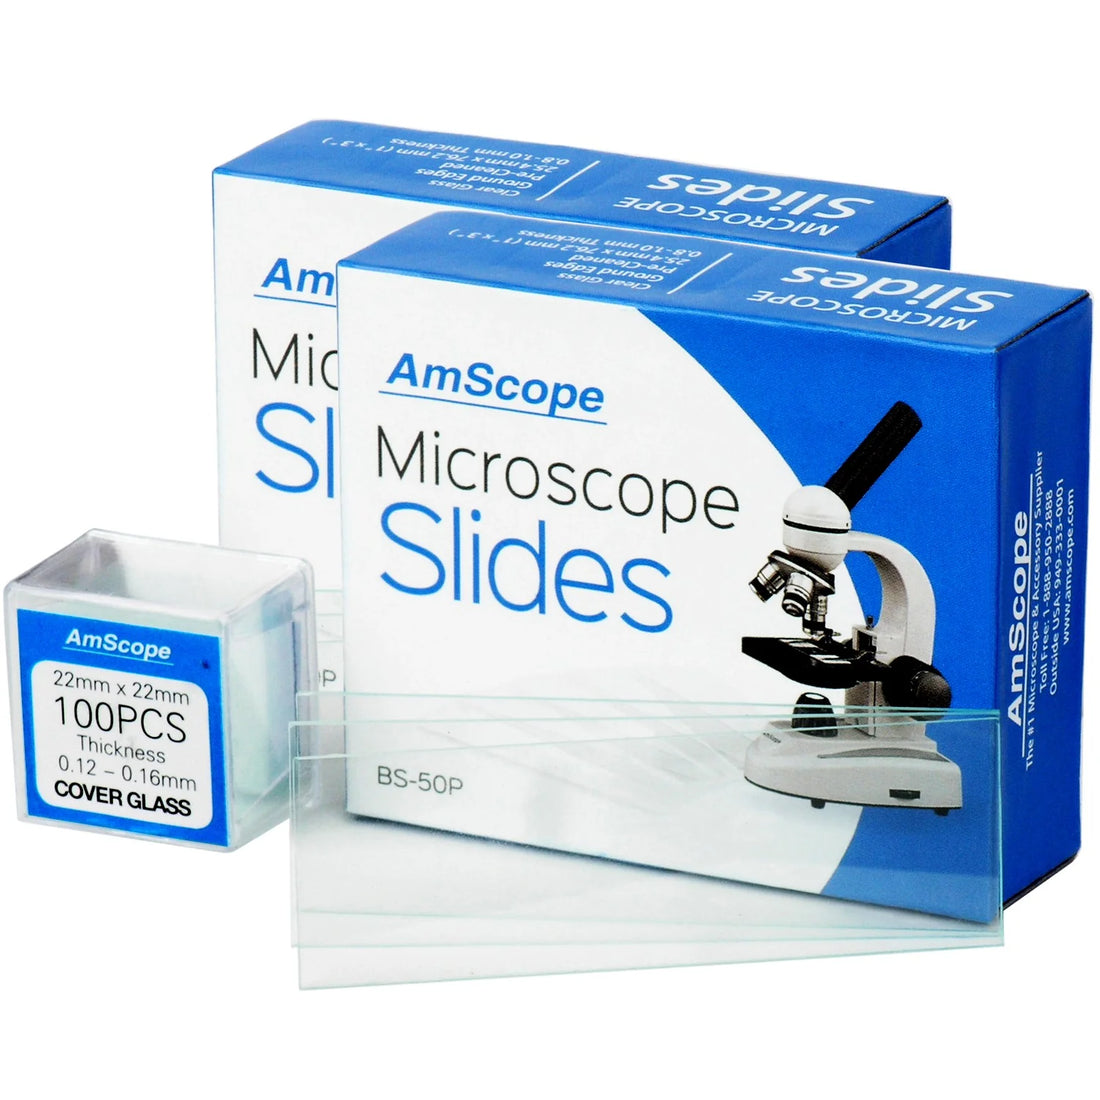 How do you prepare a Microscope Slide